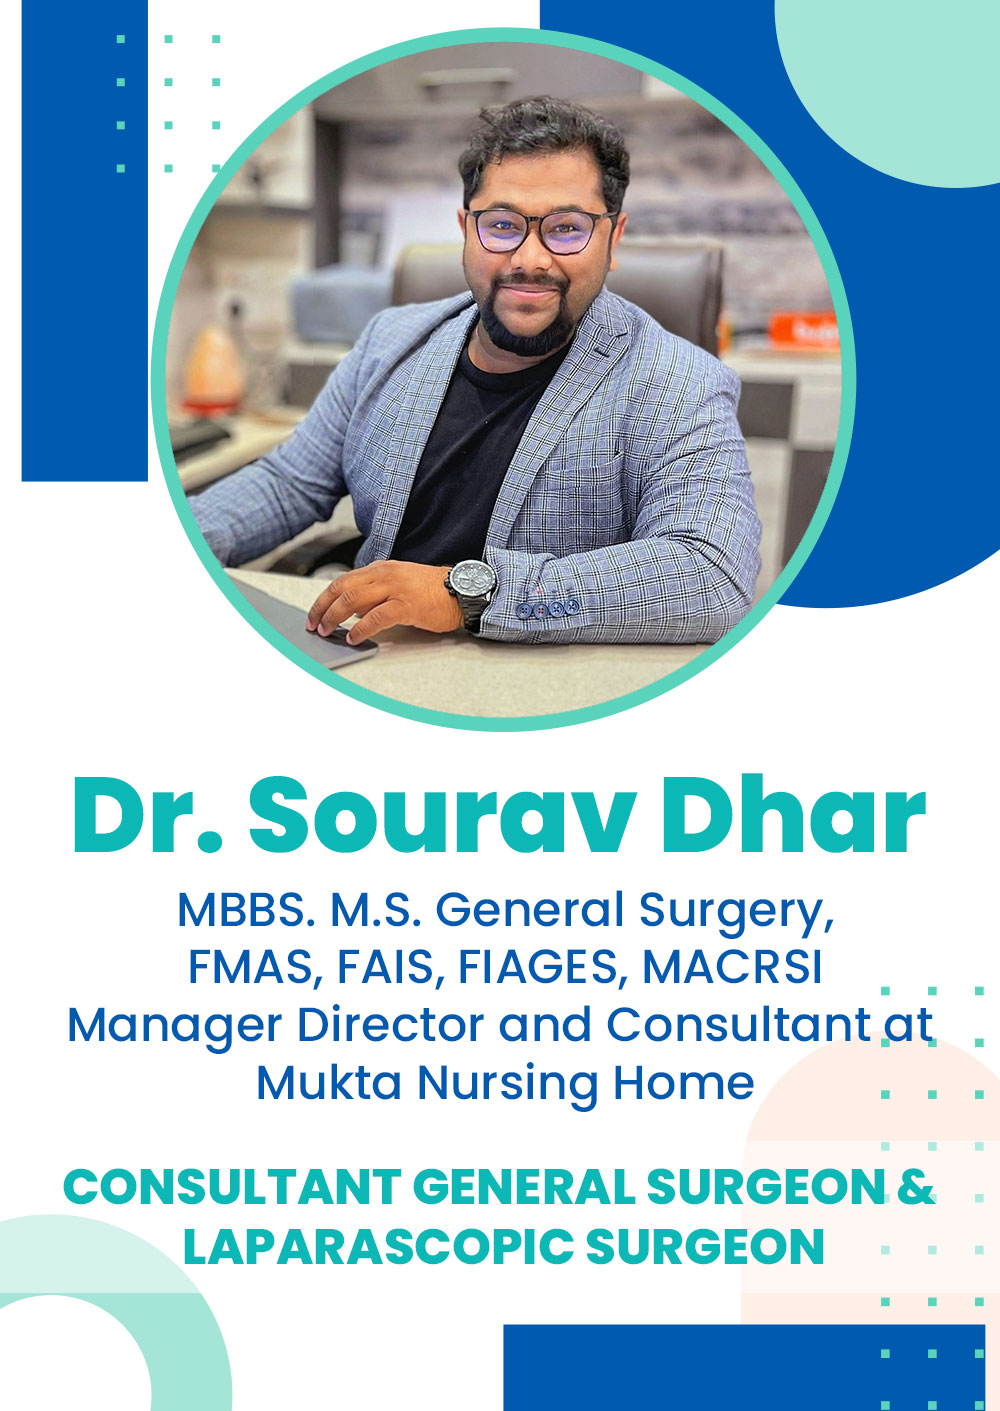 Dr. Sourav Dhar